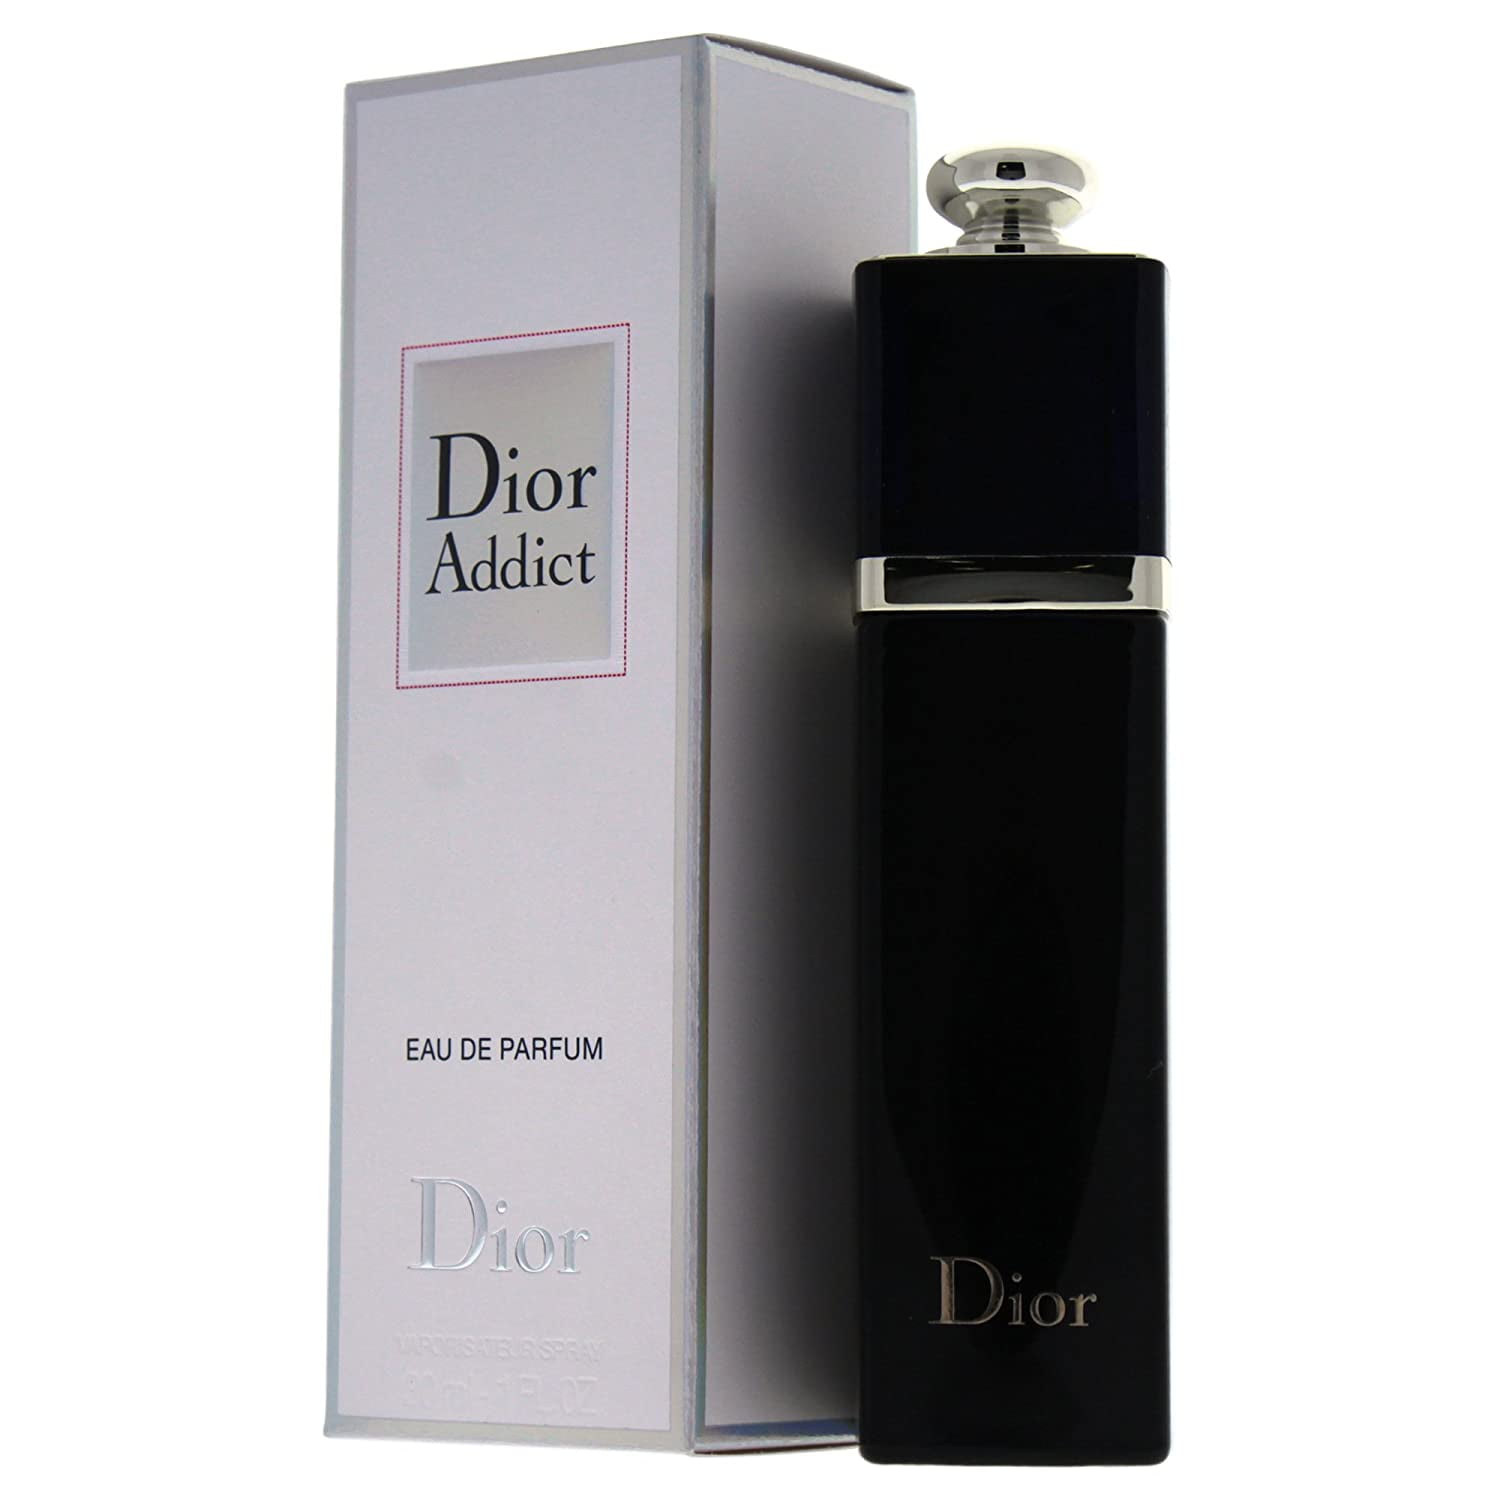 Bordenden uærlig Klæbrig Christian Dior Addict Eau de Parfum Spray, 1 fl oz - Walmart.com